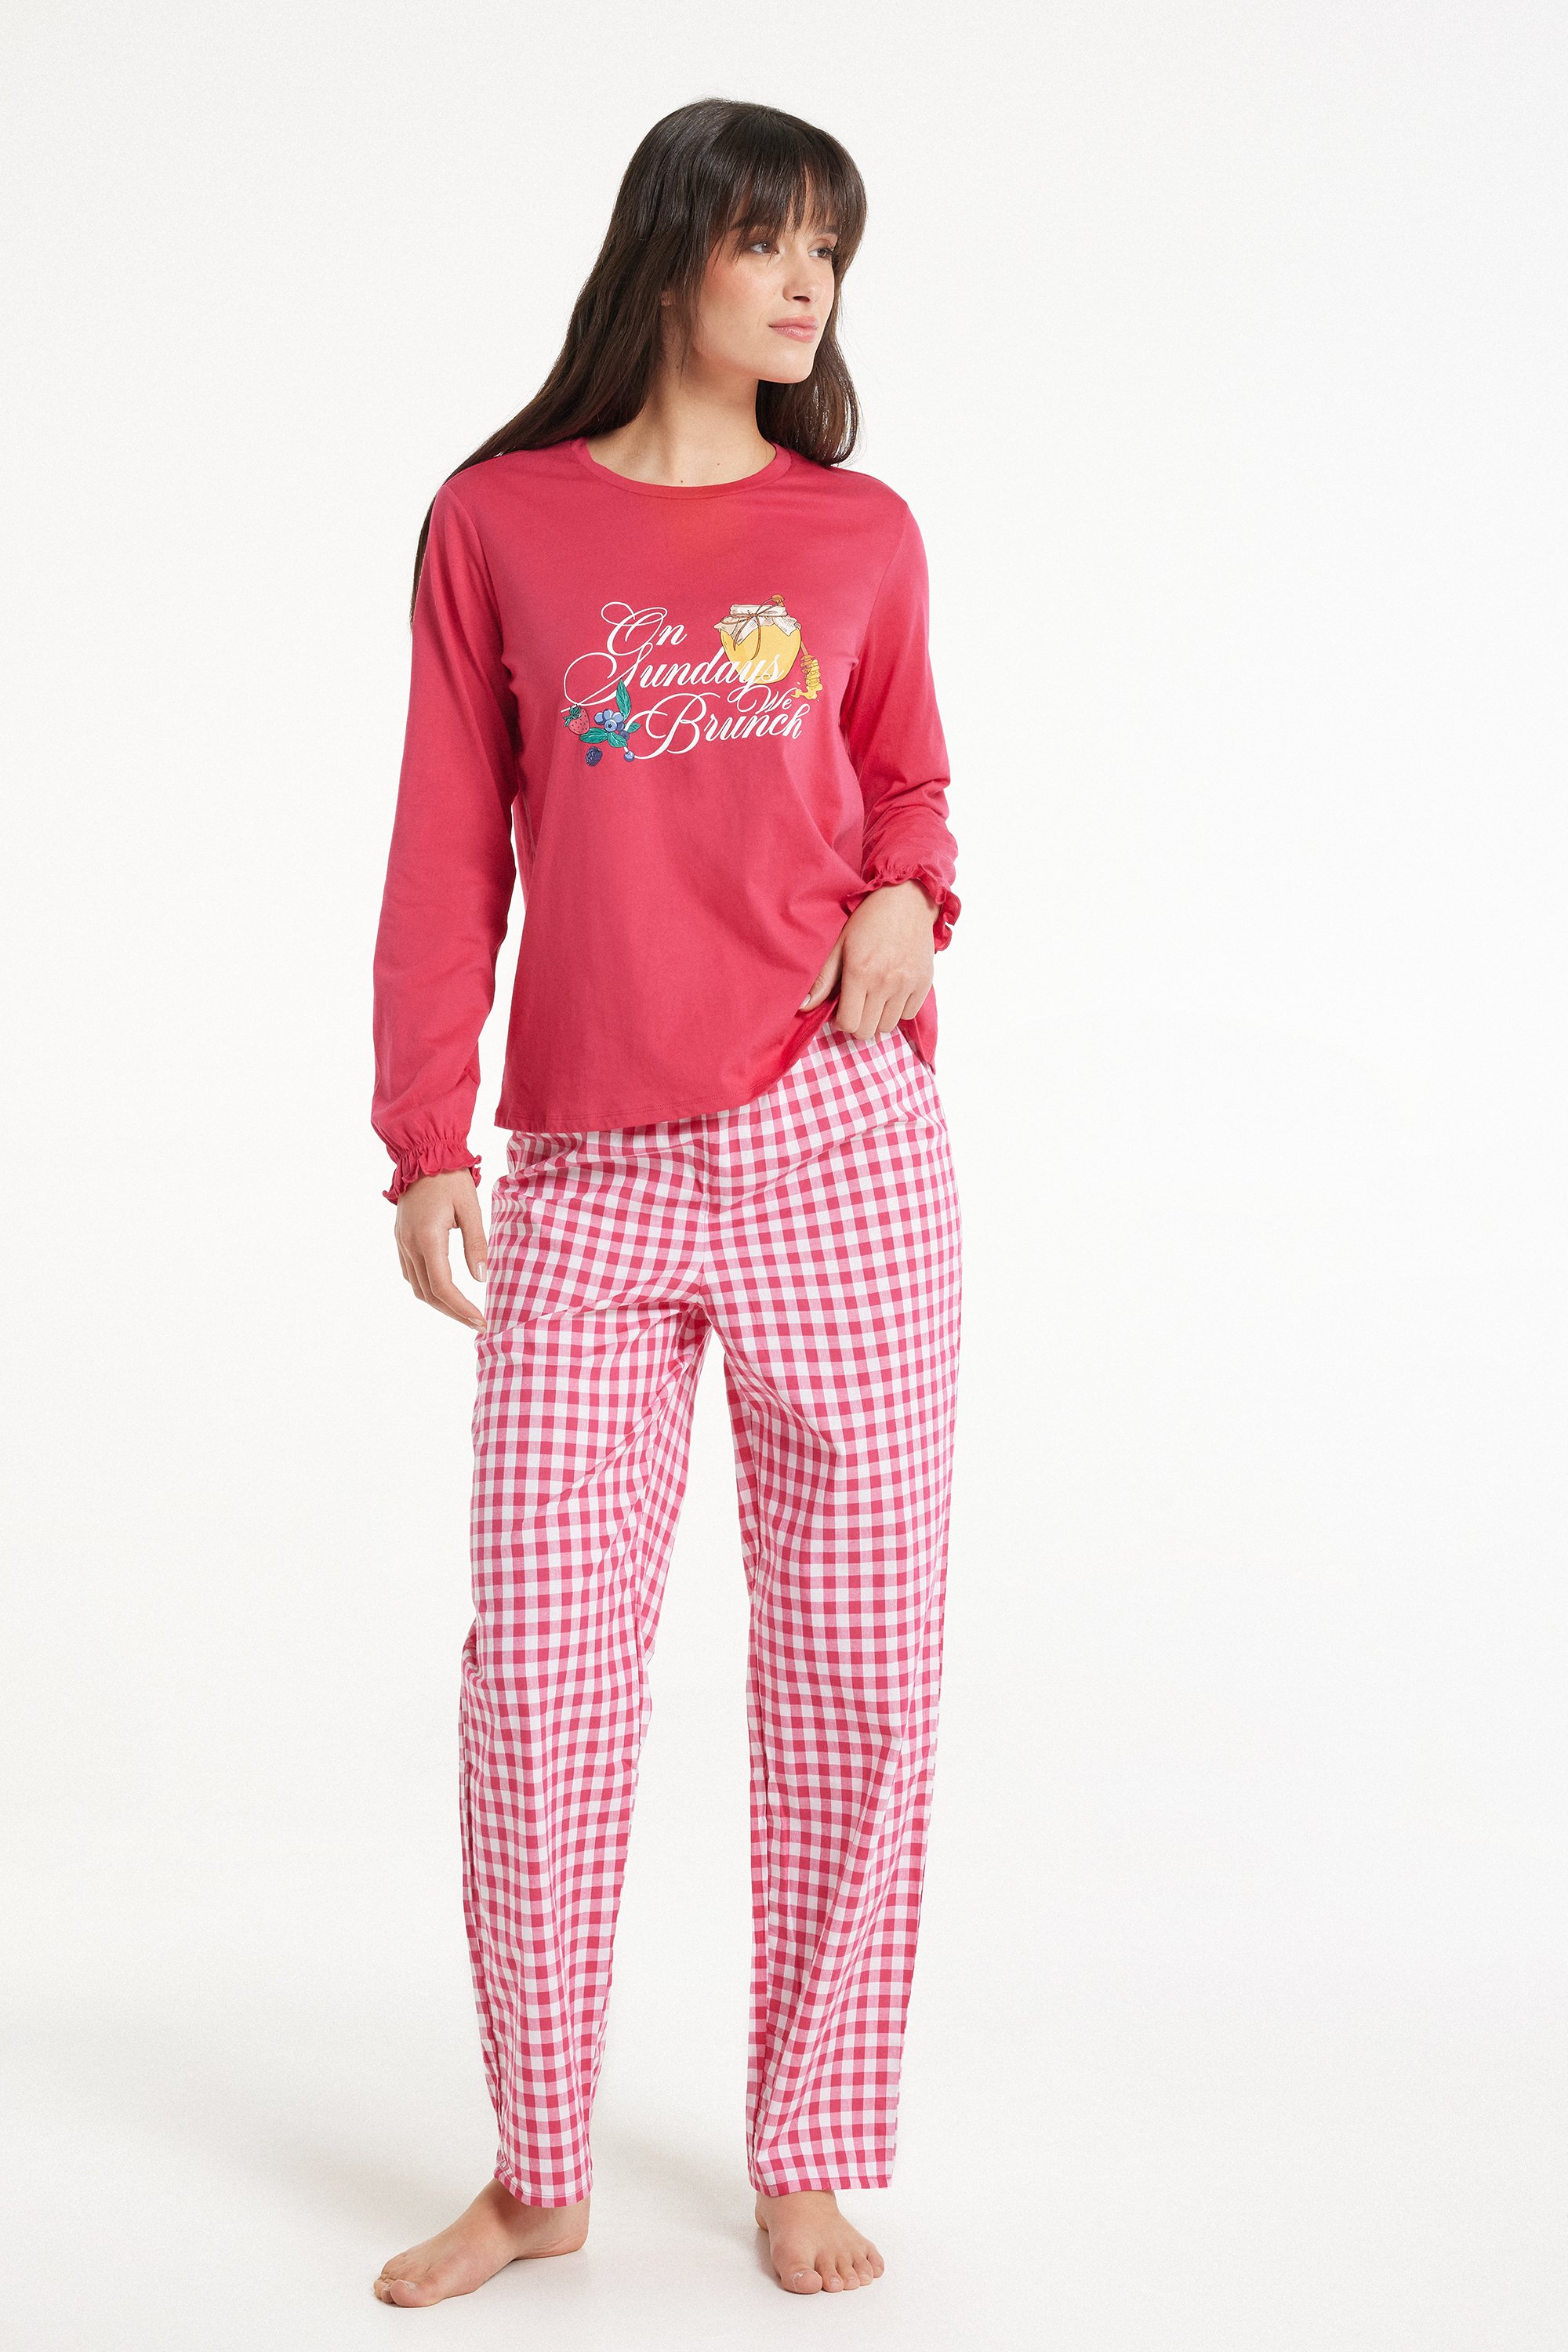 Langer Pyjama aus Baumwolle mit „Brunch“-Print